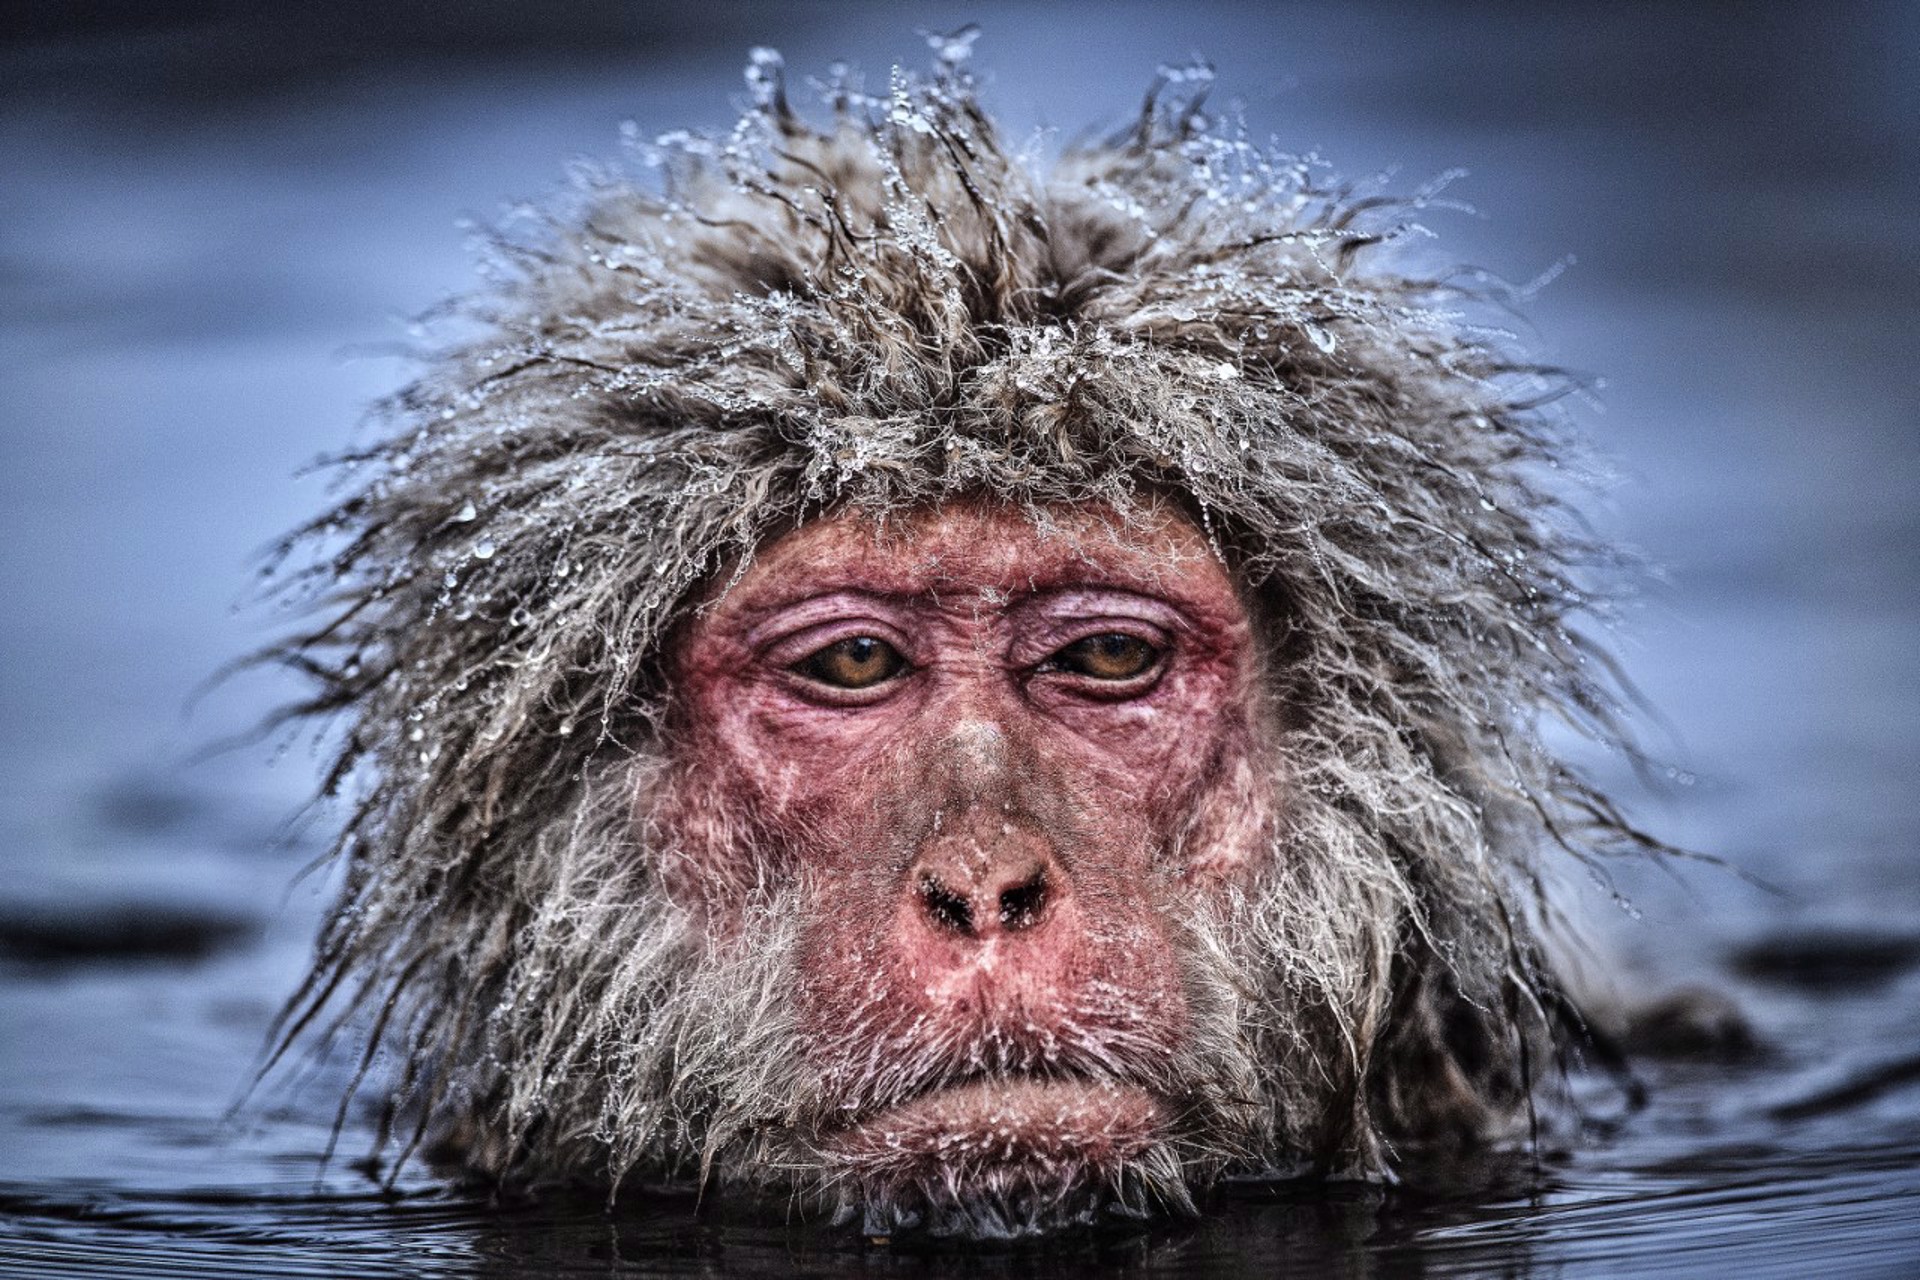 Grumpy Monkey by David Yarrow